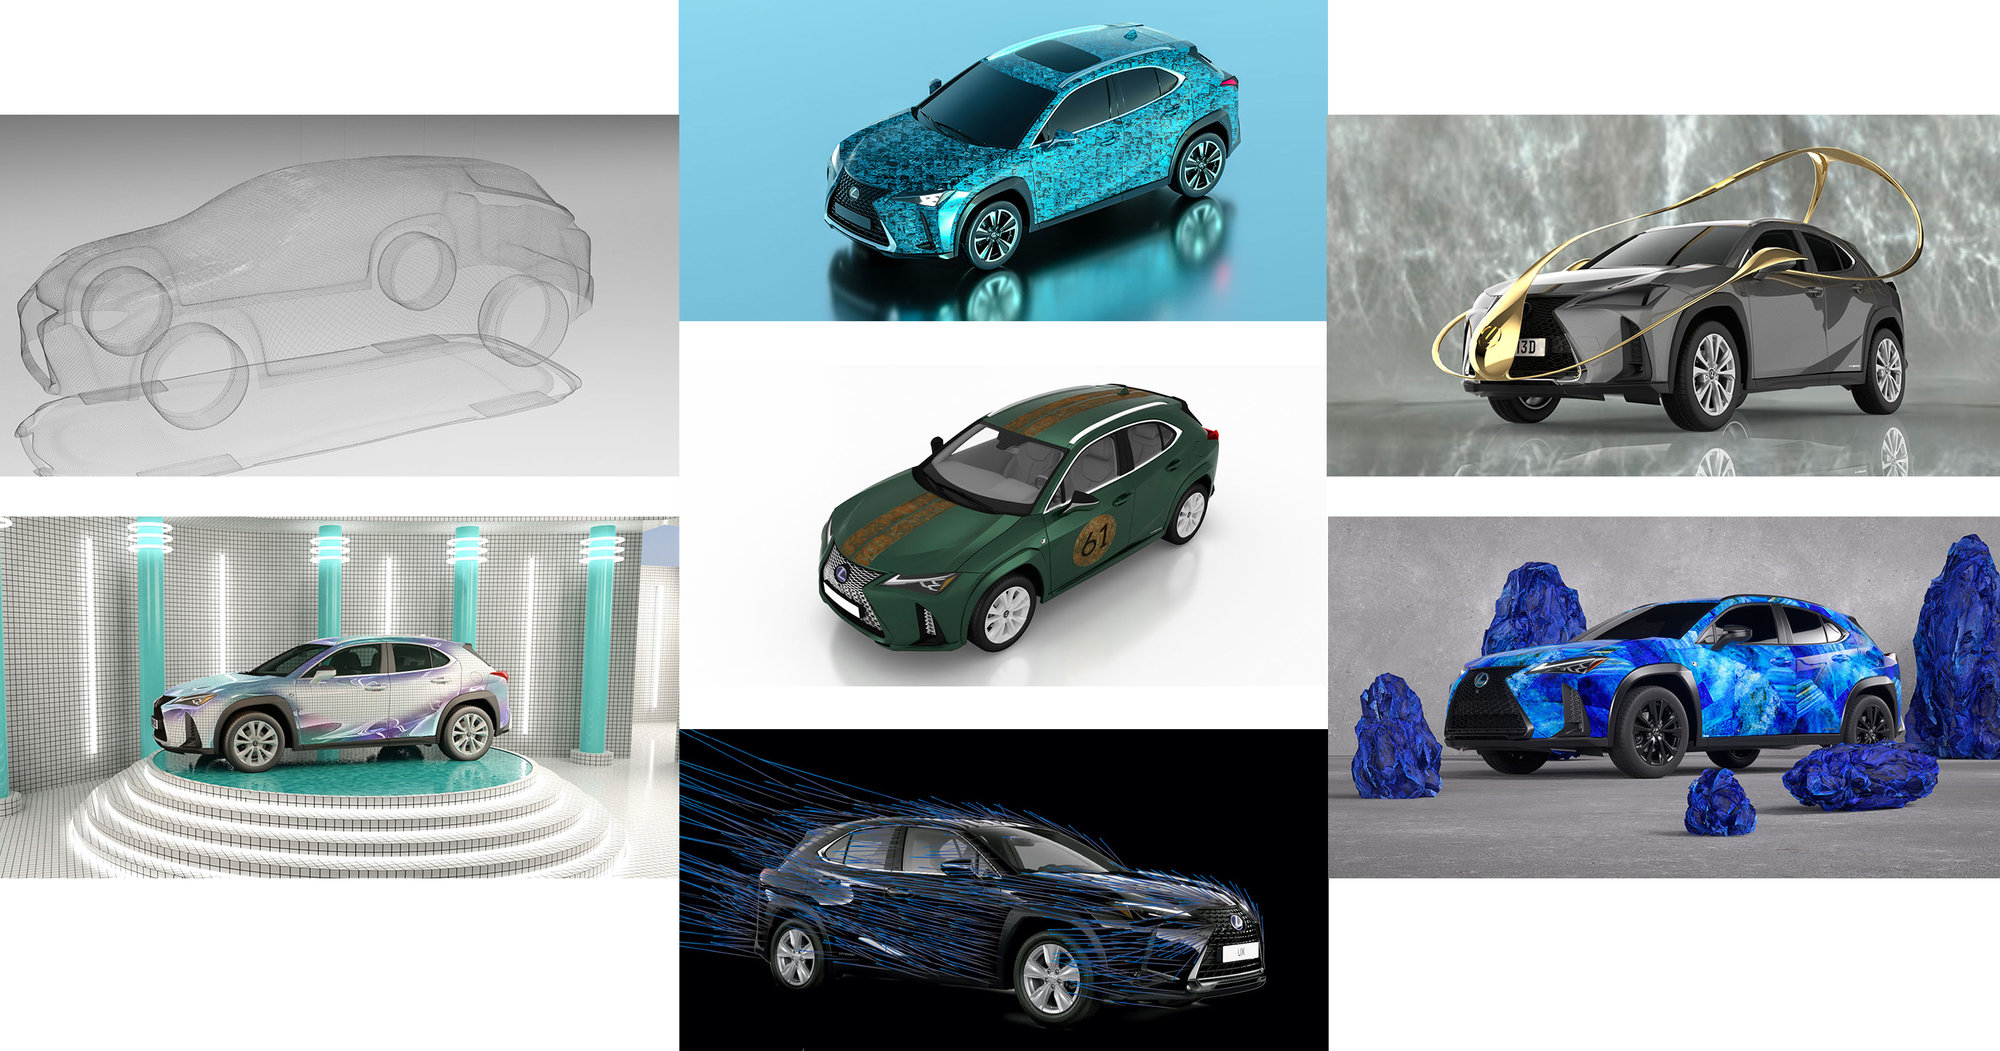 Galería: Lexus presenta los 7 proyectos del concurso de diseño Lexus Art Car